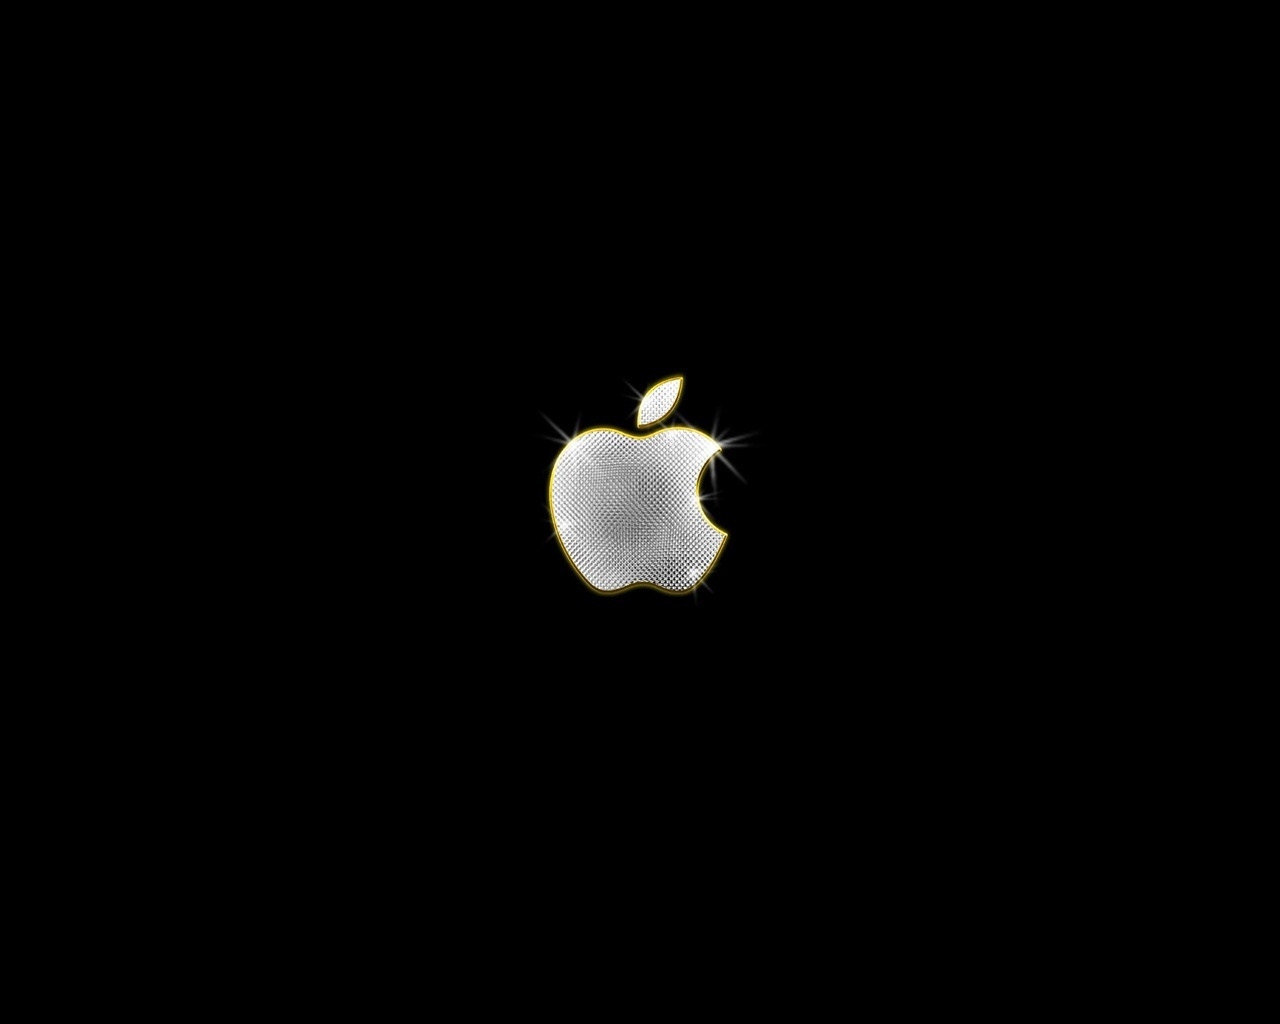 Apple Bling for 1280 x 1024 resolution